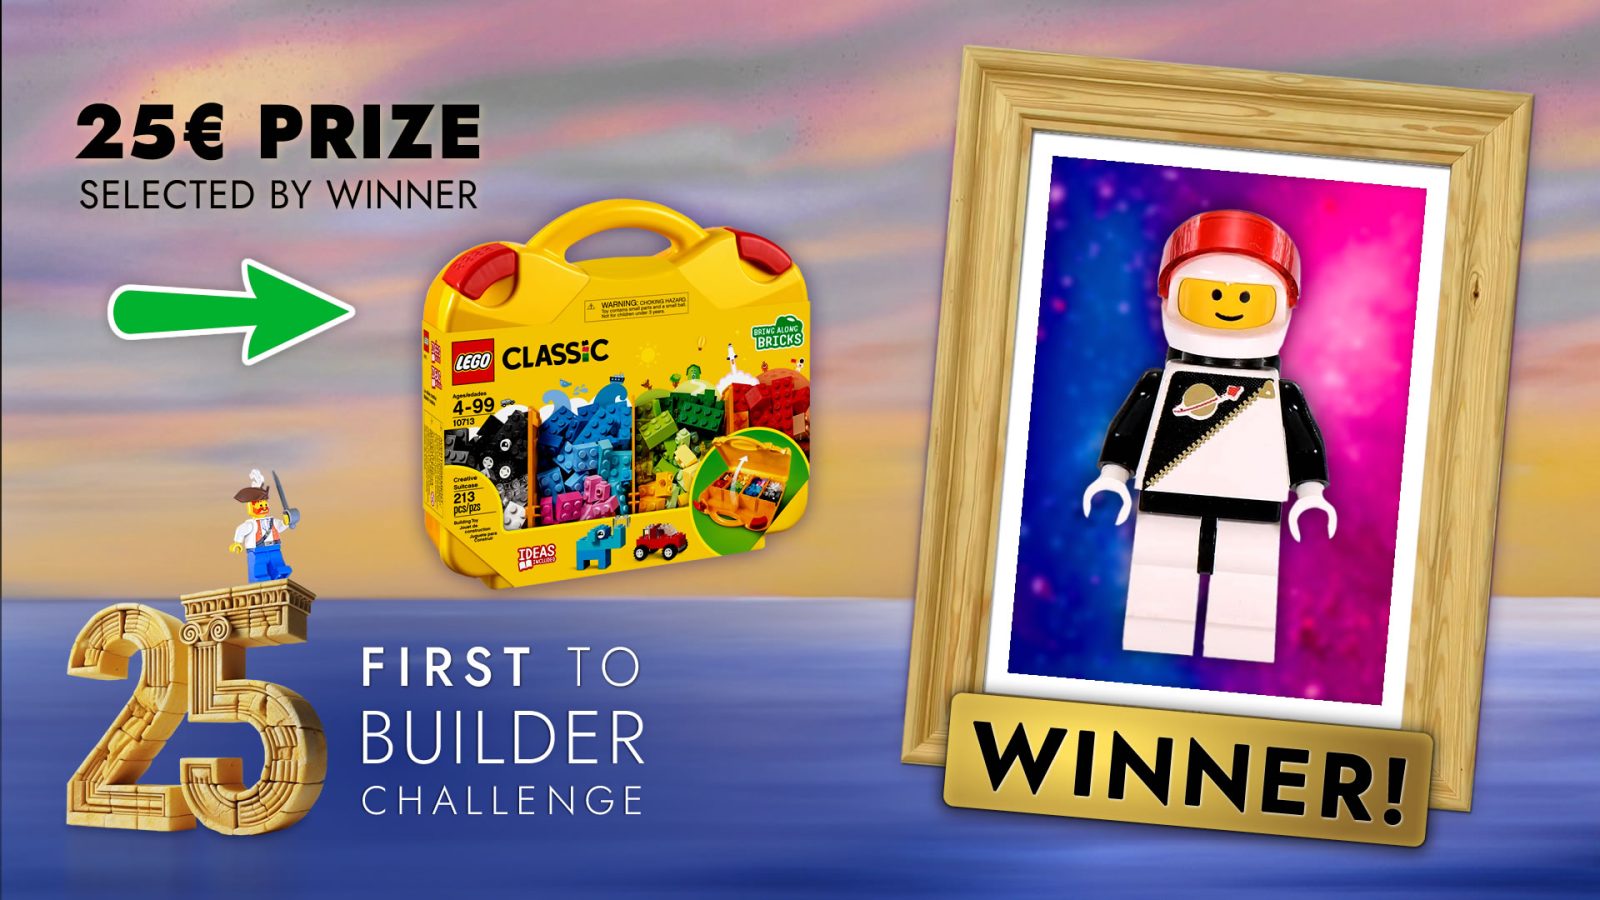 First to 25 Builder Challenge Winner